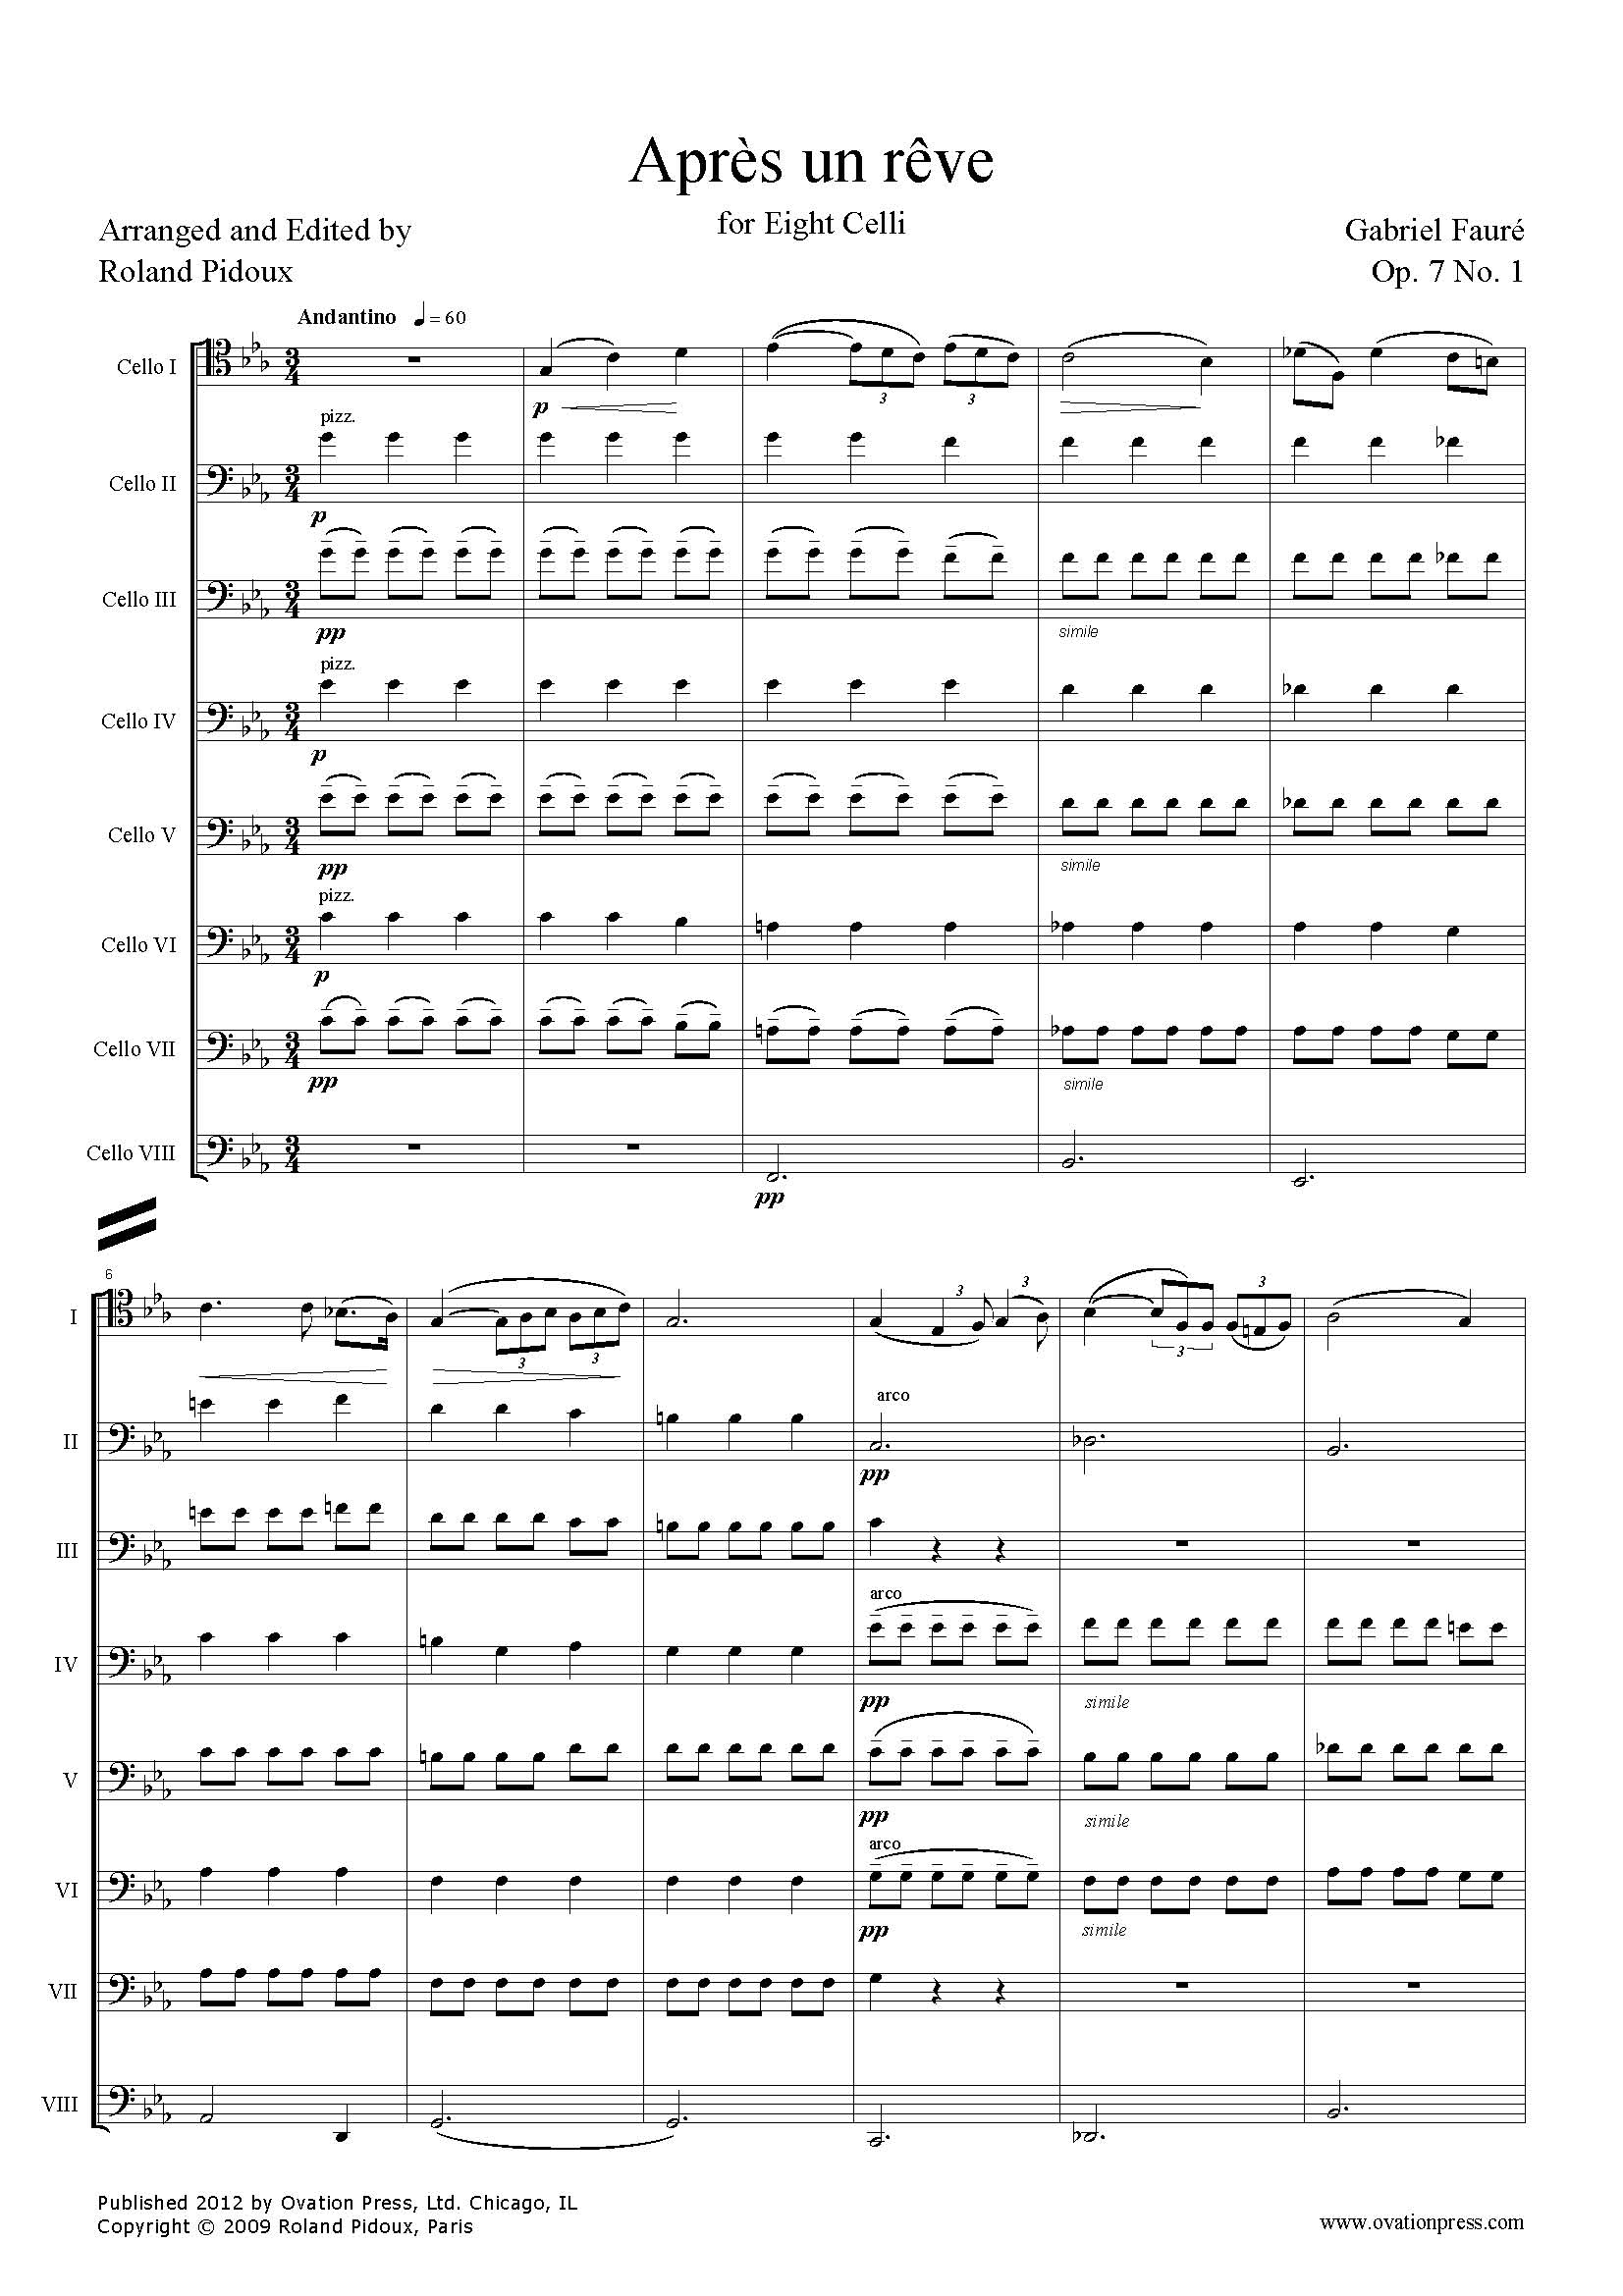 Fauré Après un rêve Arranged for Cello Octet